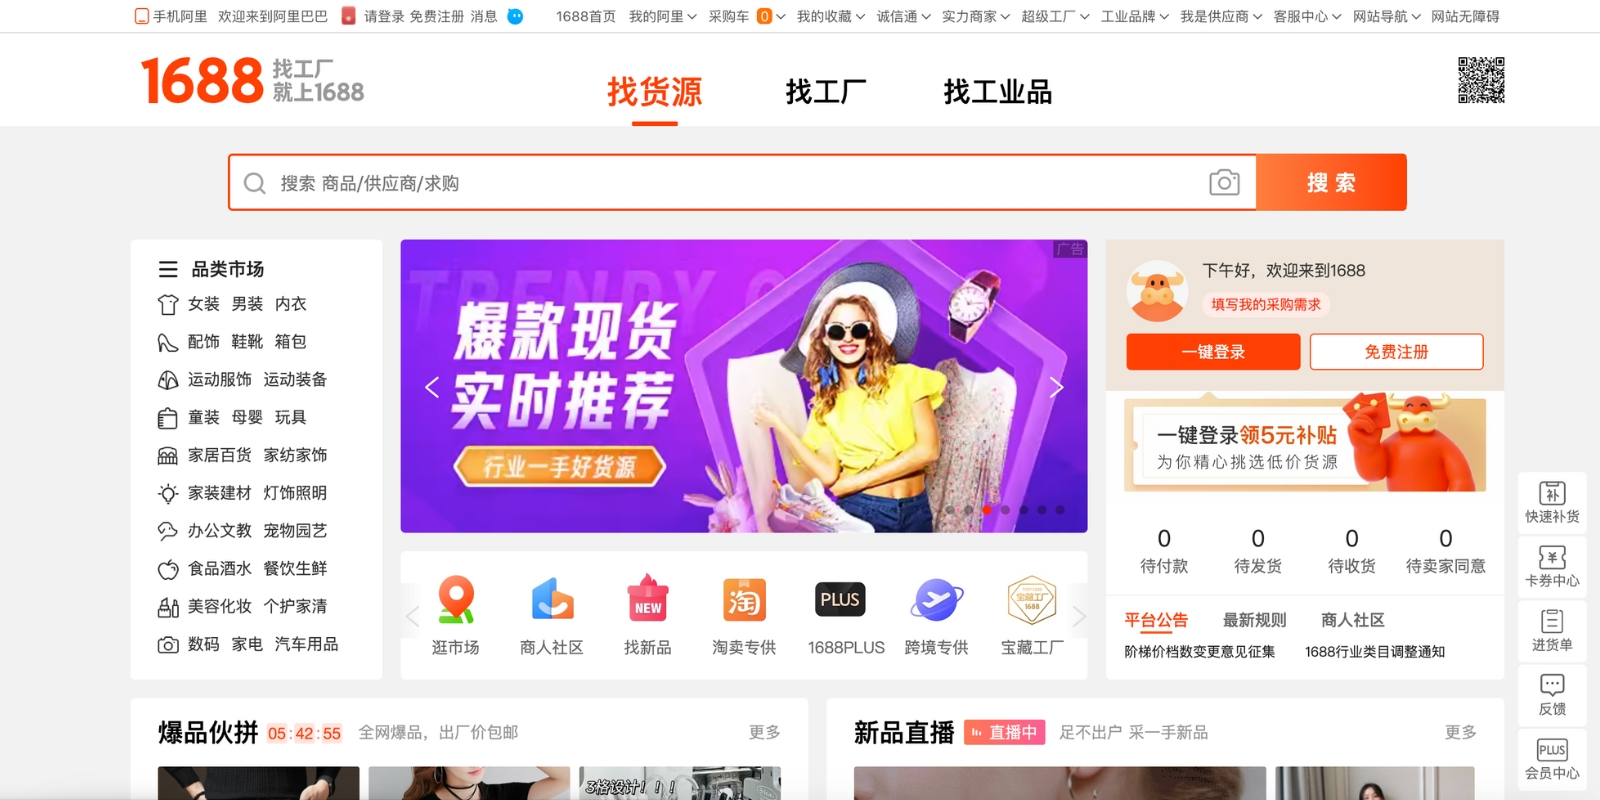 1688 (Alibaba China) main page web view